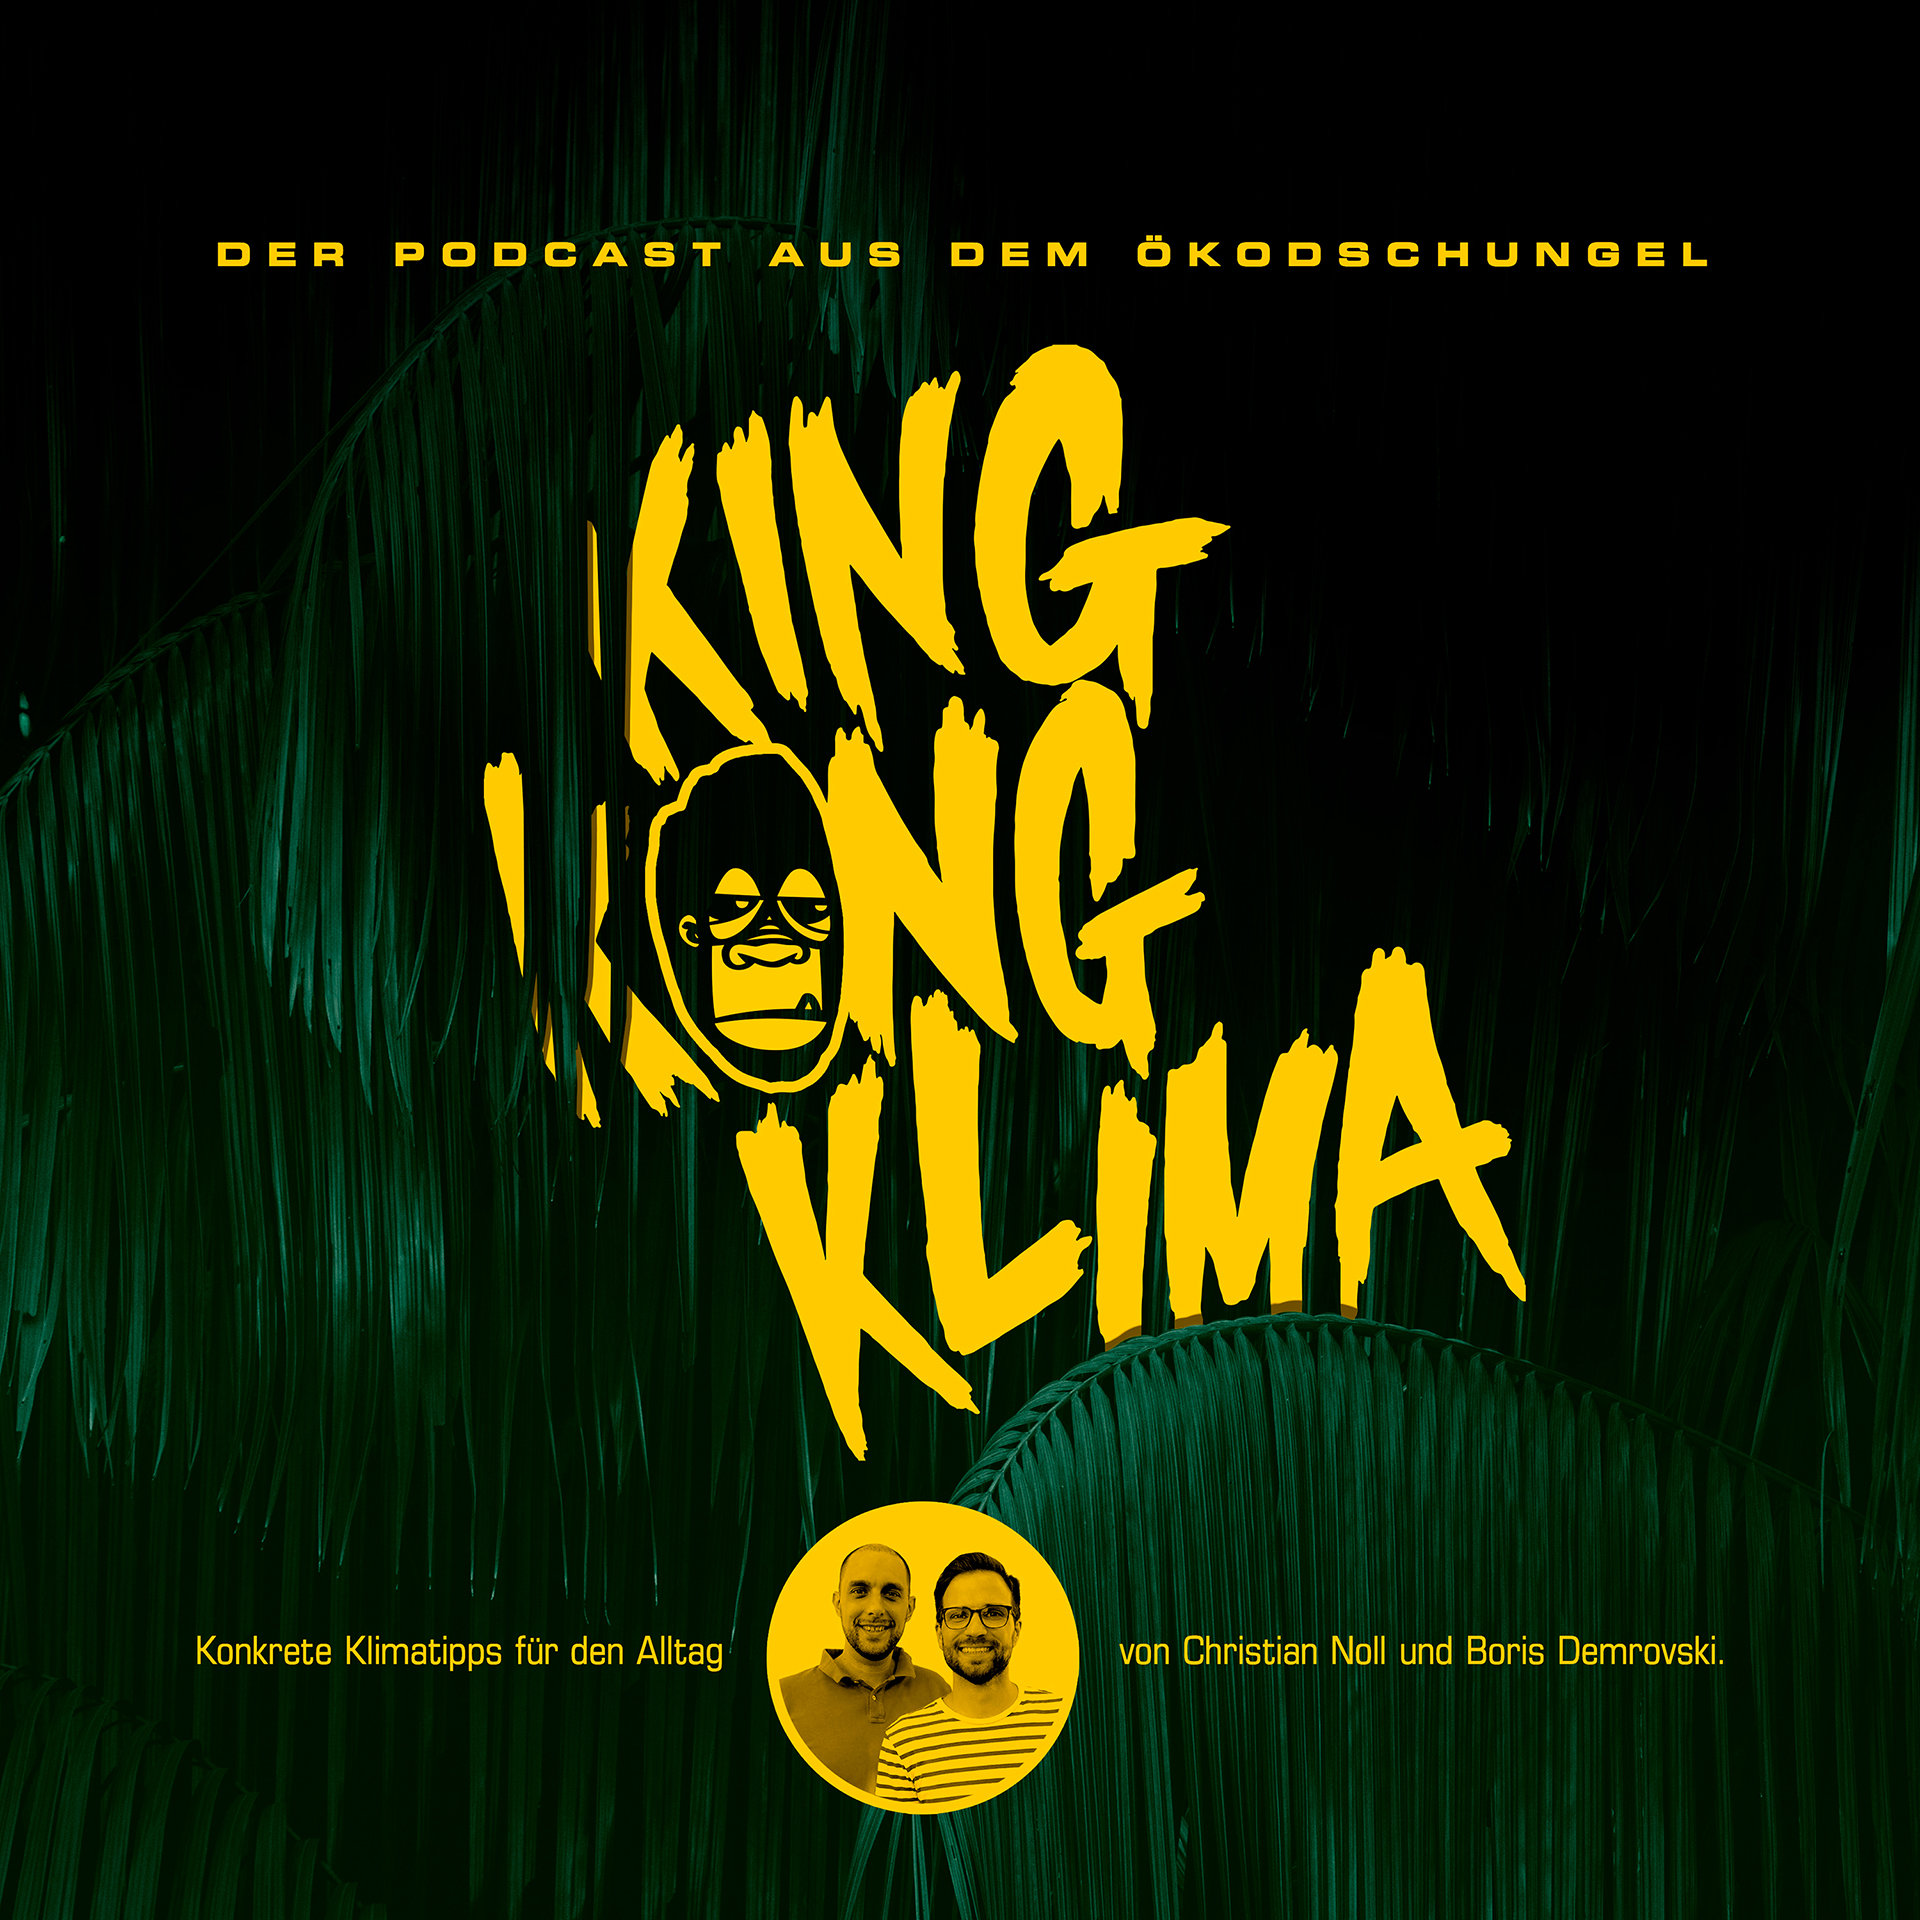 King Kong Klima - Konkrete Klimatipps für den Alltag